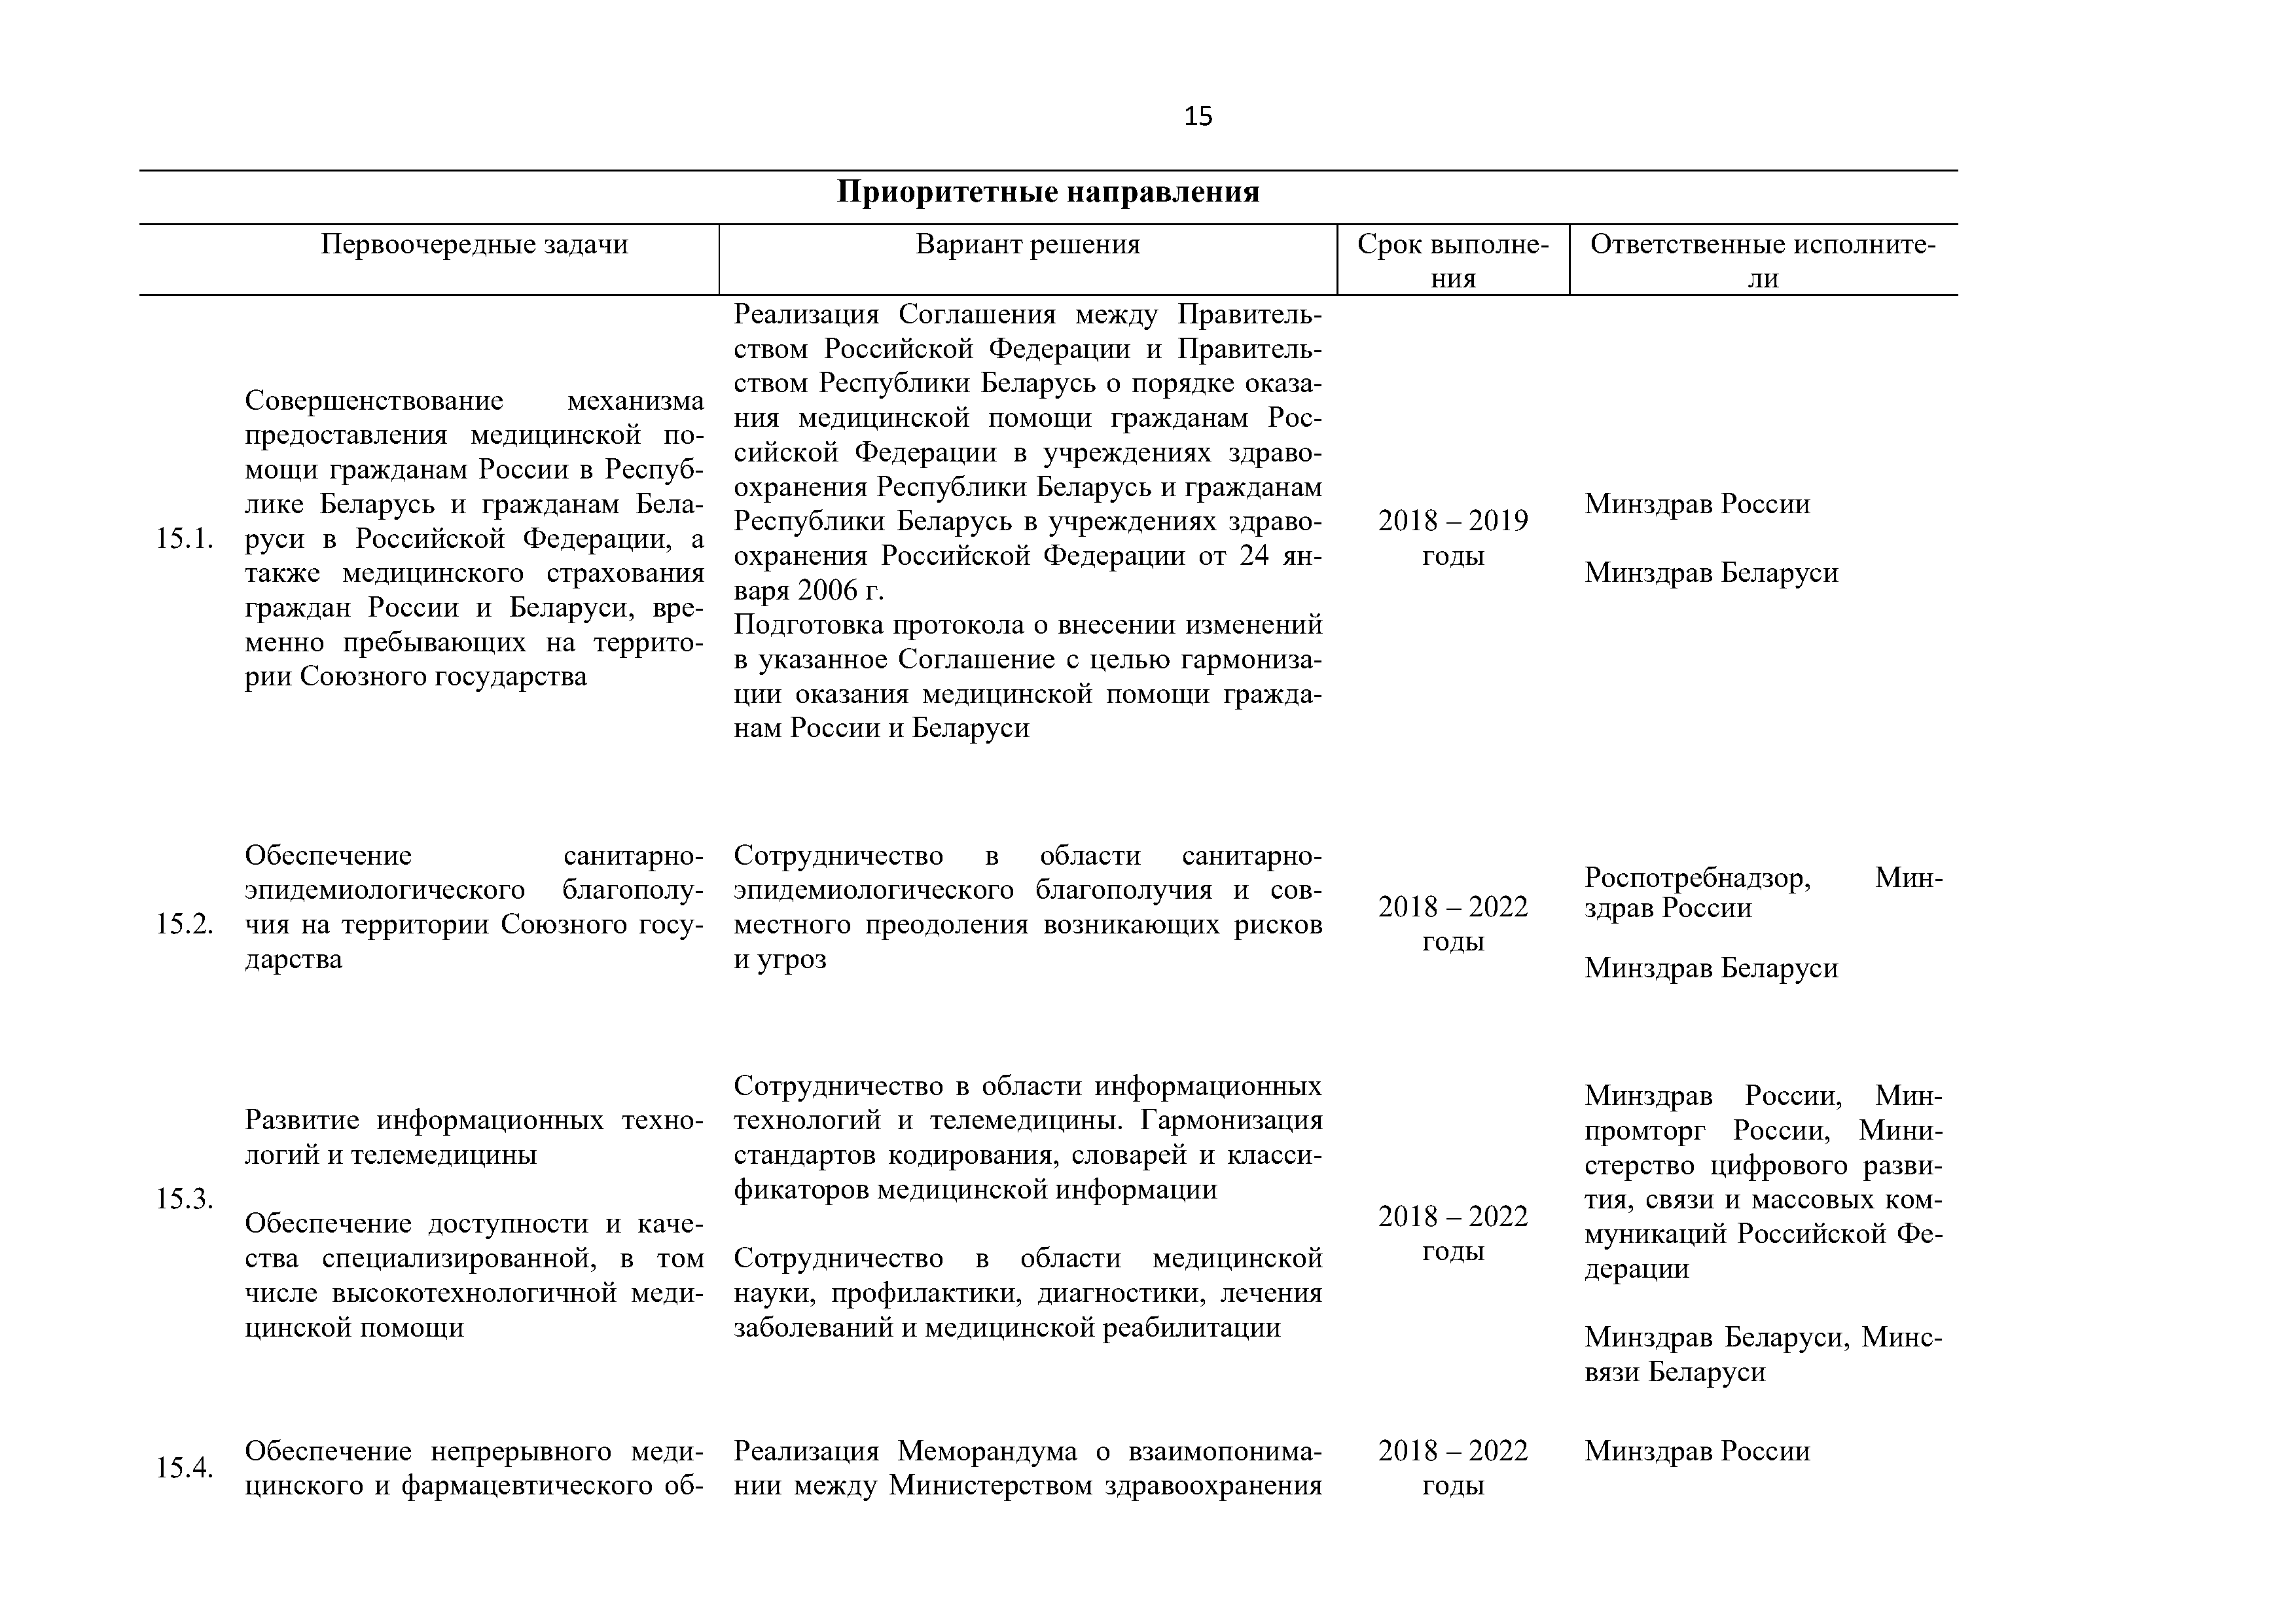 Приоритетные направления и первоочередные задачи развития Союзного государства на 2018 – 2022 г. (Страница 15)